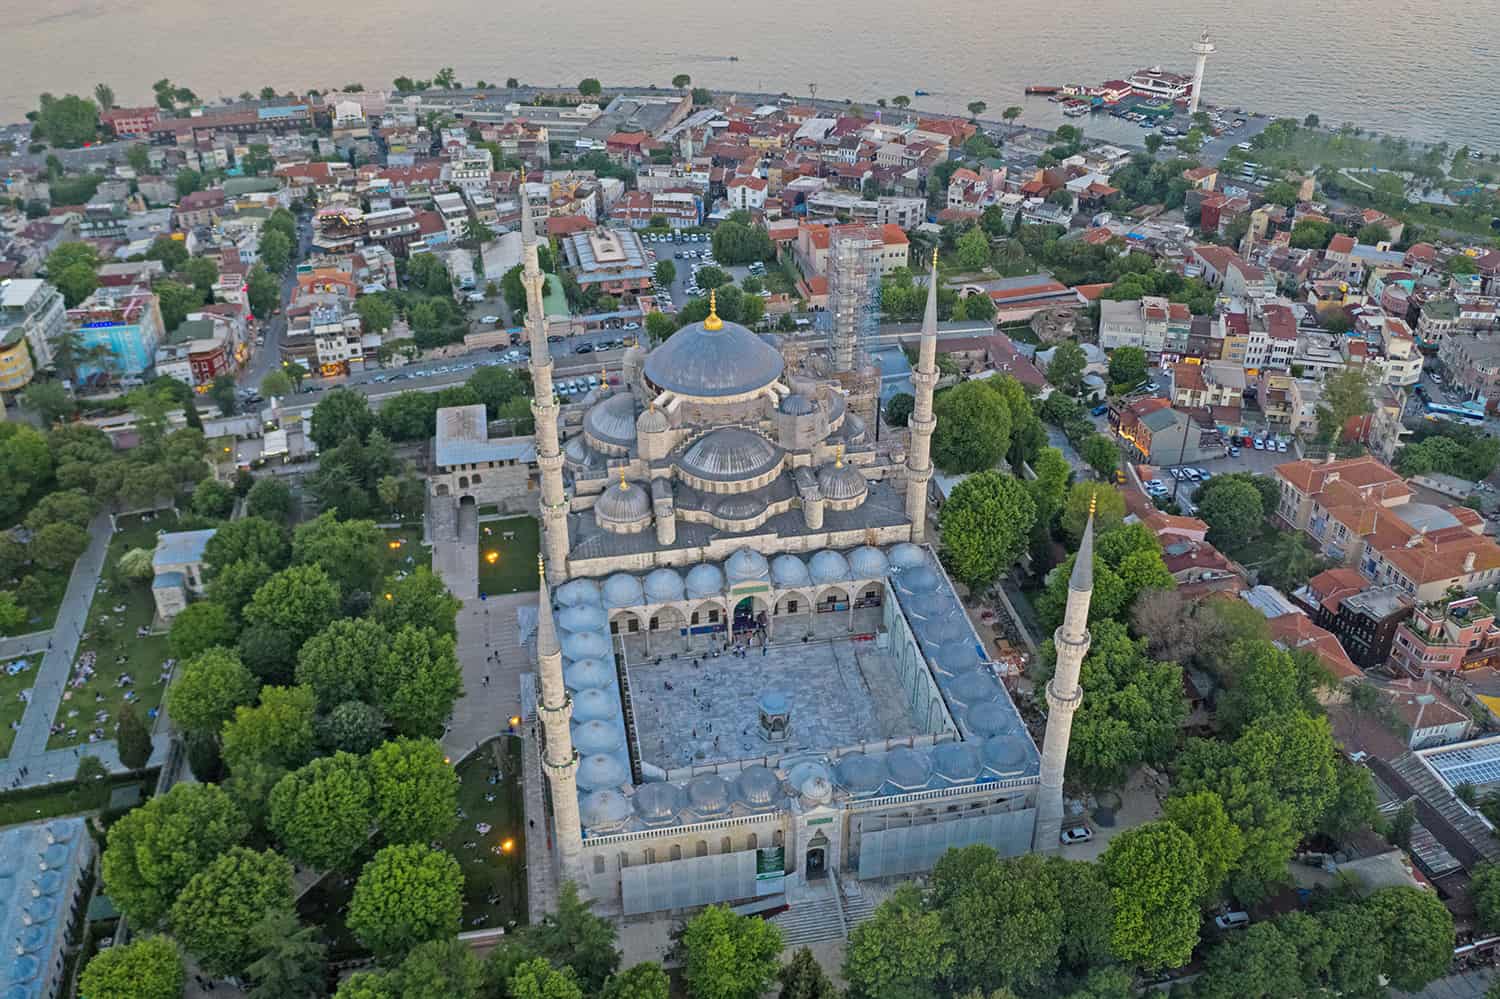 Sultanahmet Mosque (Turkish: Sultanahmet Camii) in Istanbul